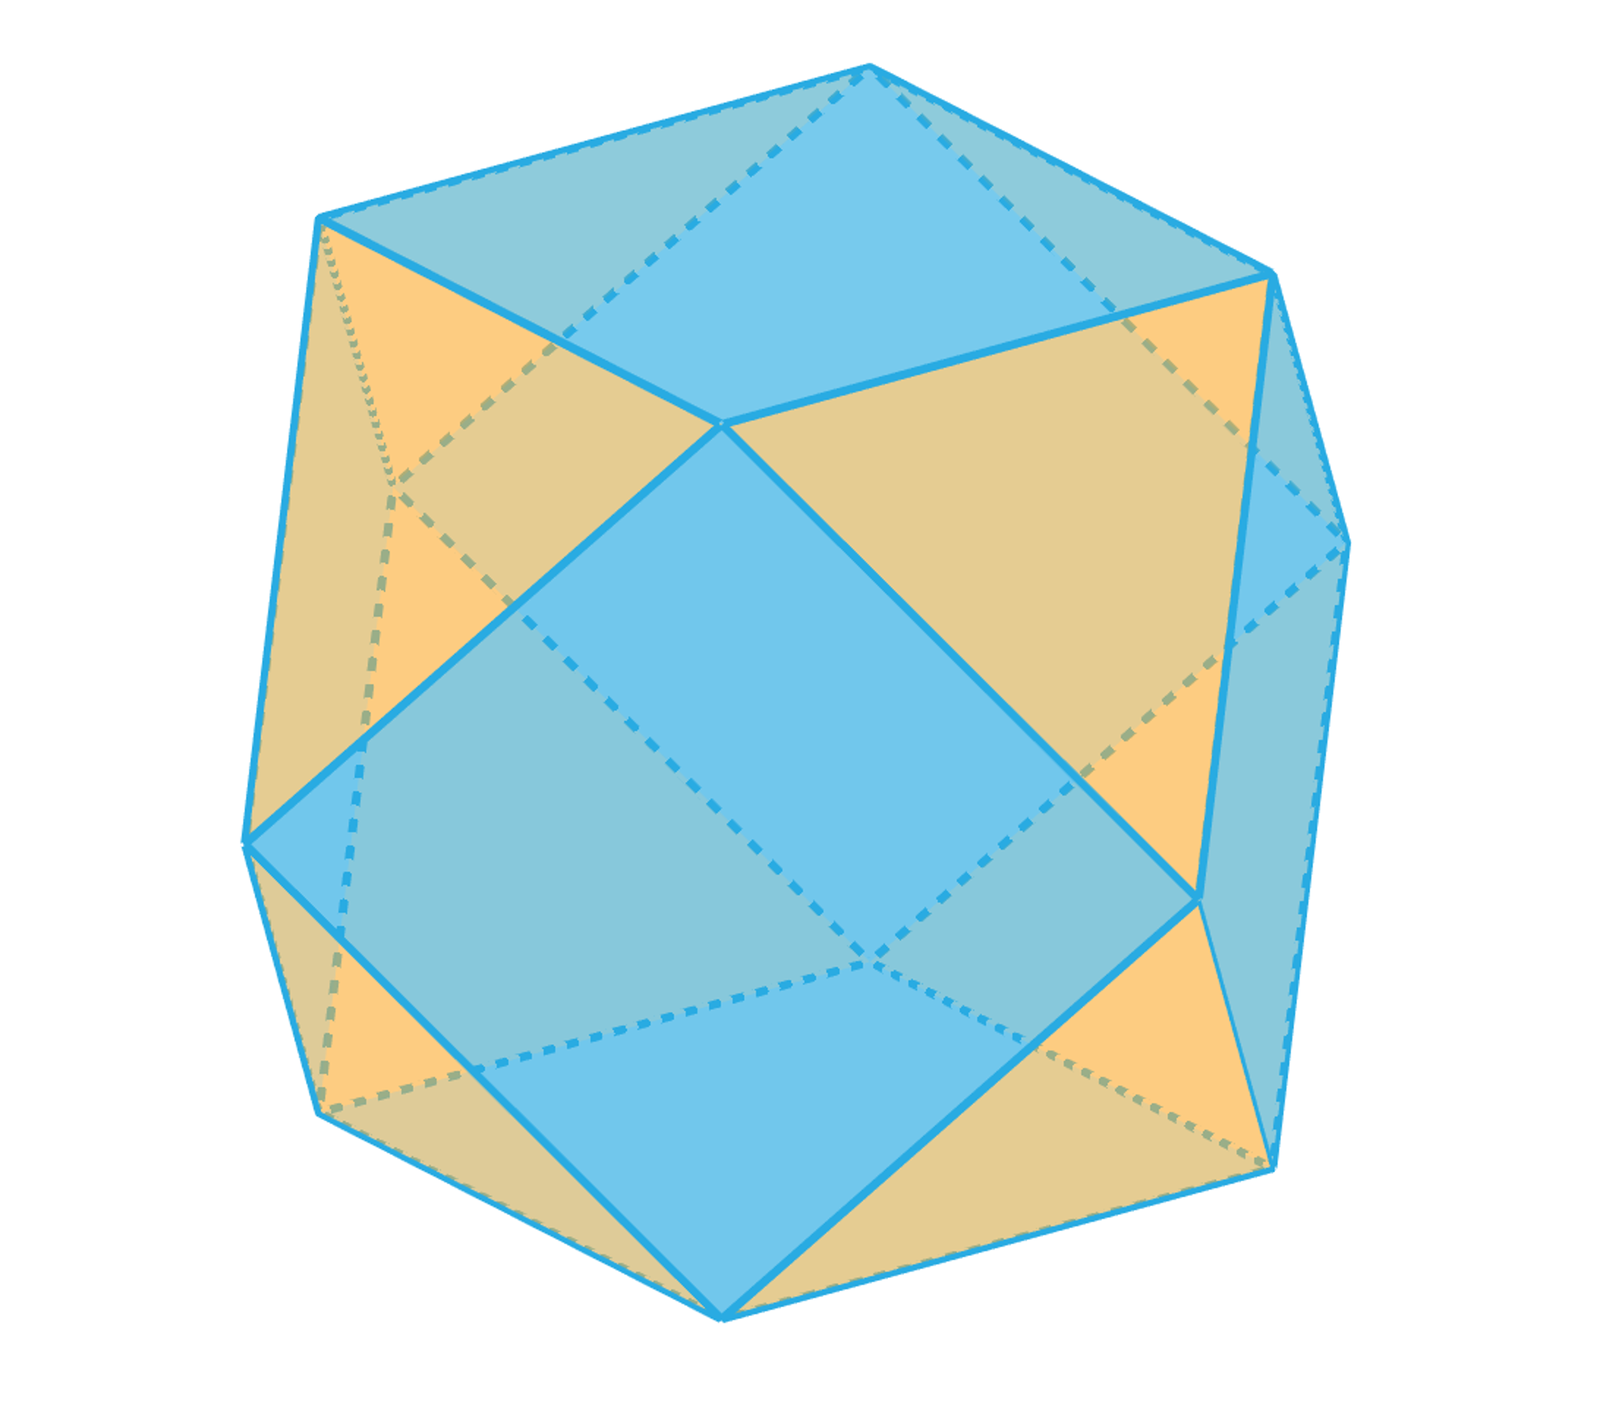 Aplet przedstawia siatkę sześcio-ośmiościanu. Siatka ta składa się z sześciu kwadratów i ośmiu trójkątów równobocznych. Poniżej ilustracji znajduje się suwak, decydujący o stopniu złożenia się siatki. Zakres suwaka zawiera się od płaskiej dwuwymiarowej siatki po trzywymiarowy sześcio-ośmiościan.